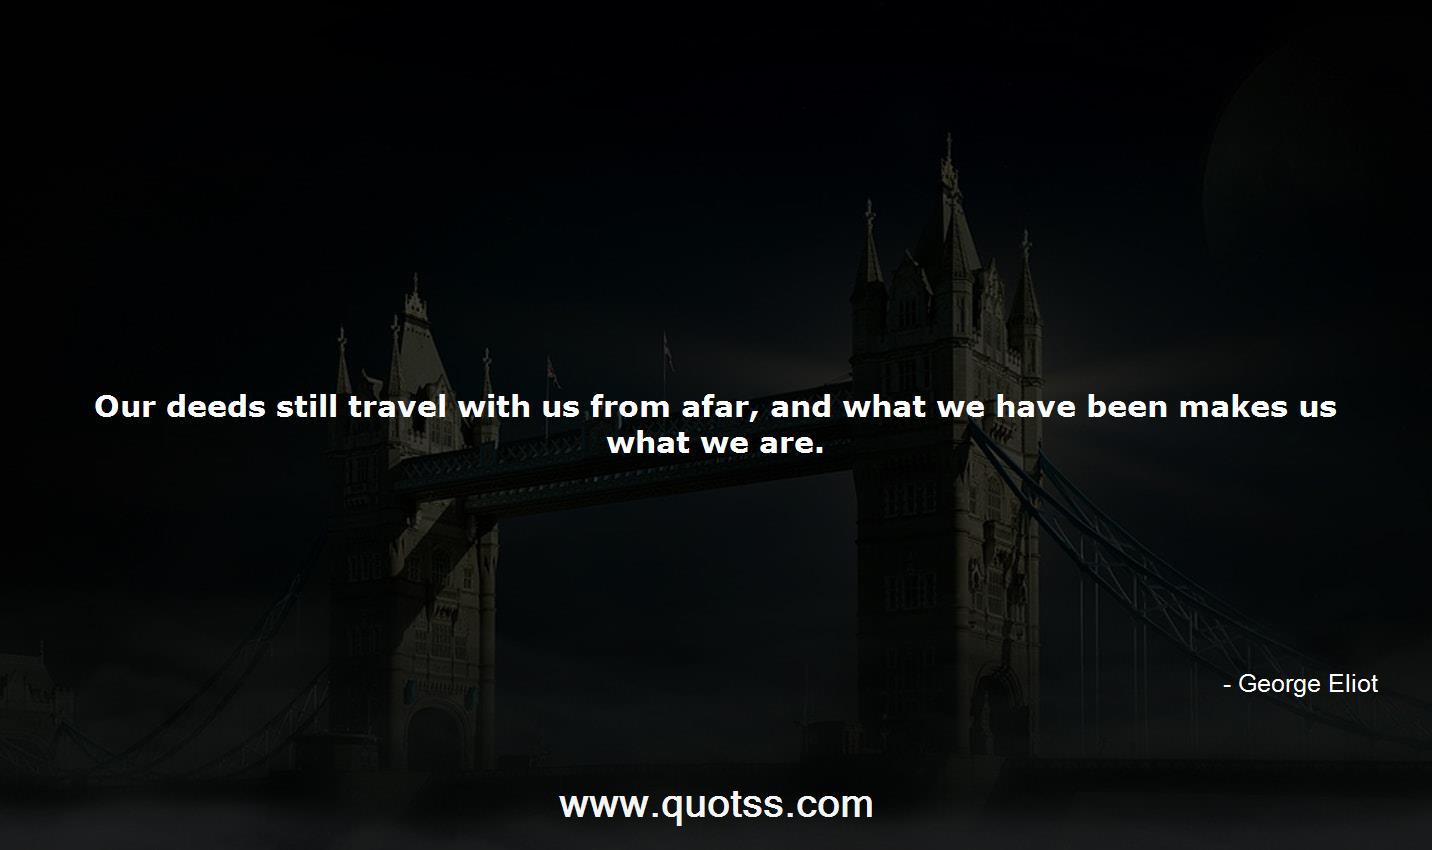 George Eliot Quote on Quotss